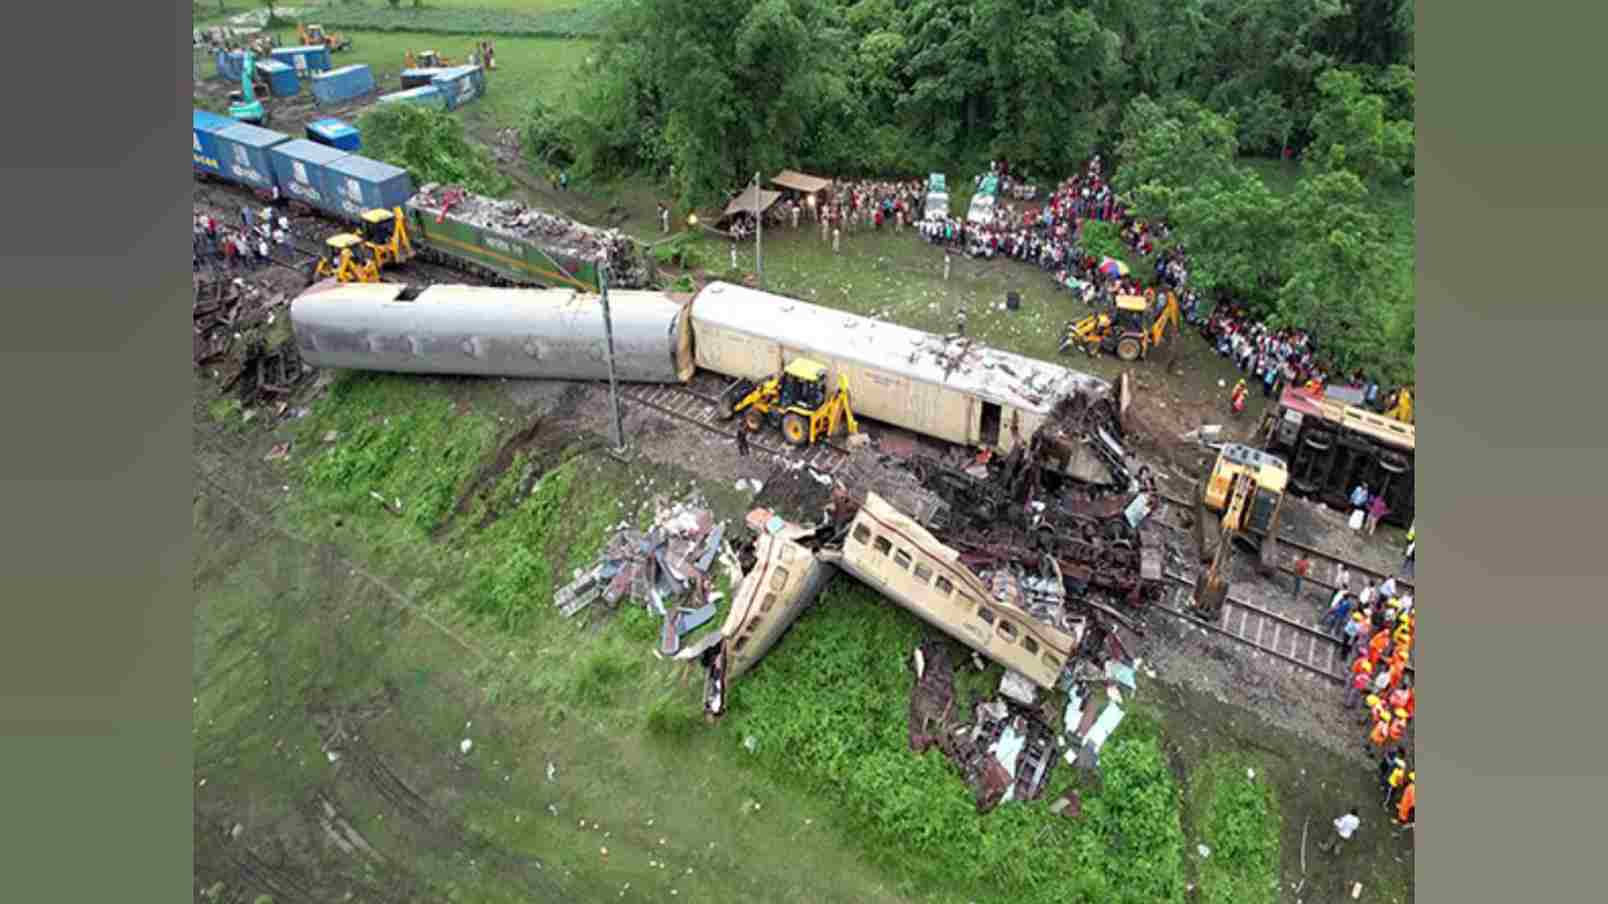 अब सामने आएगा सच, 19 जून को रेलवे बंगाल में कंचनजंगा रेल दुर्घटना की जांच करेगा